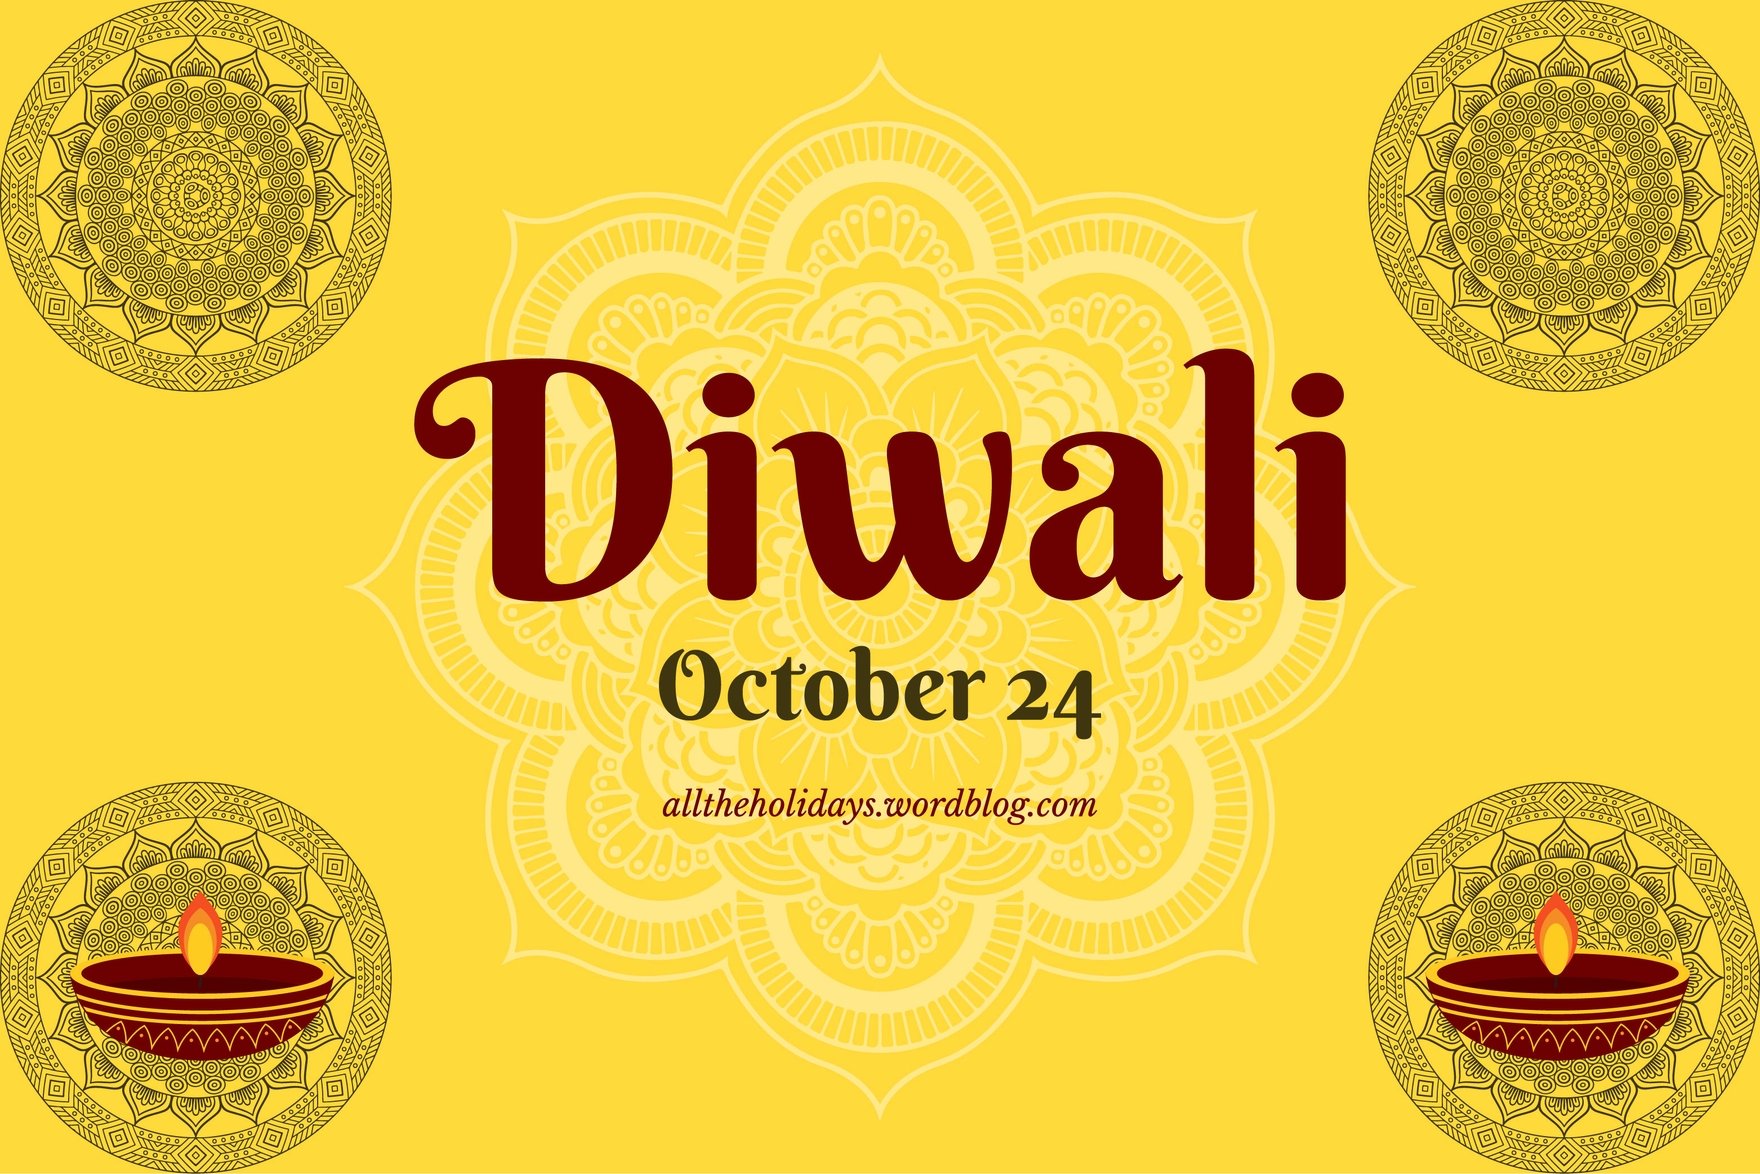 Diwali Blog Banner in Illustrator, PSD, EPS, SVG, JPG, PNG